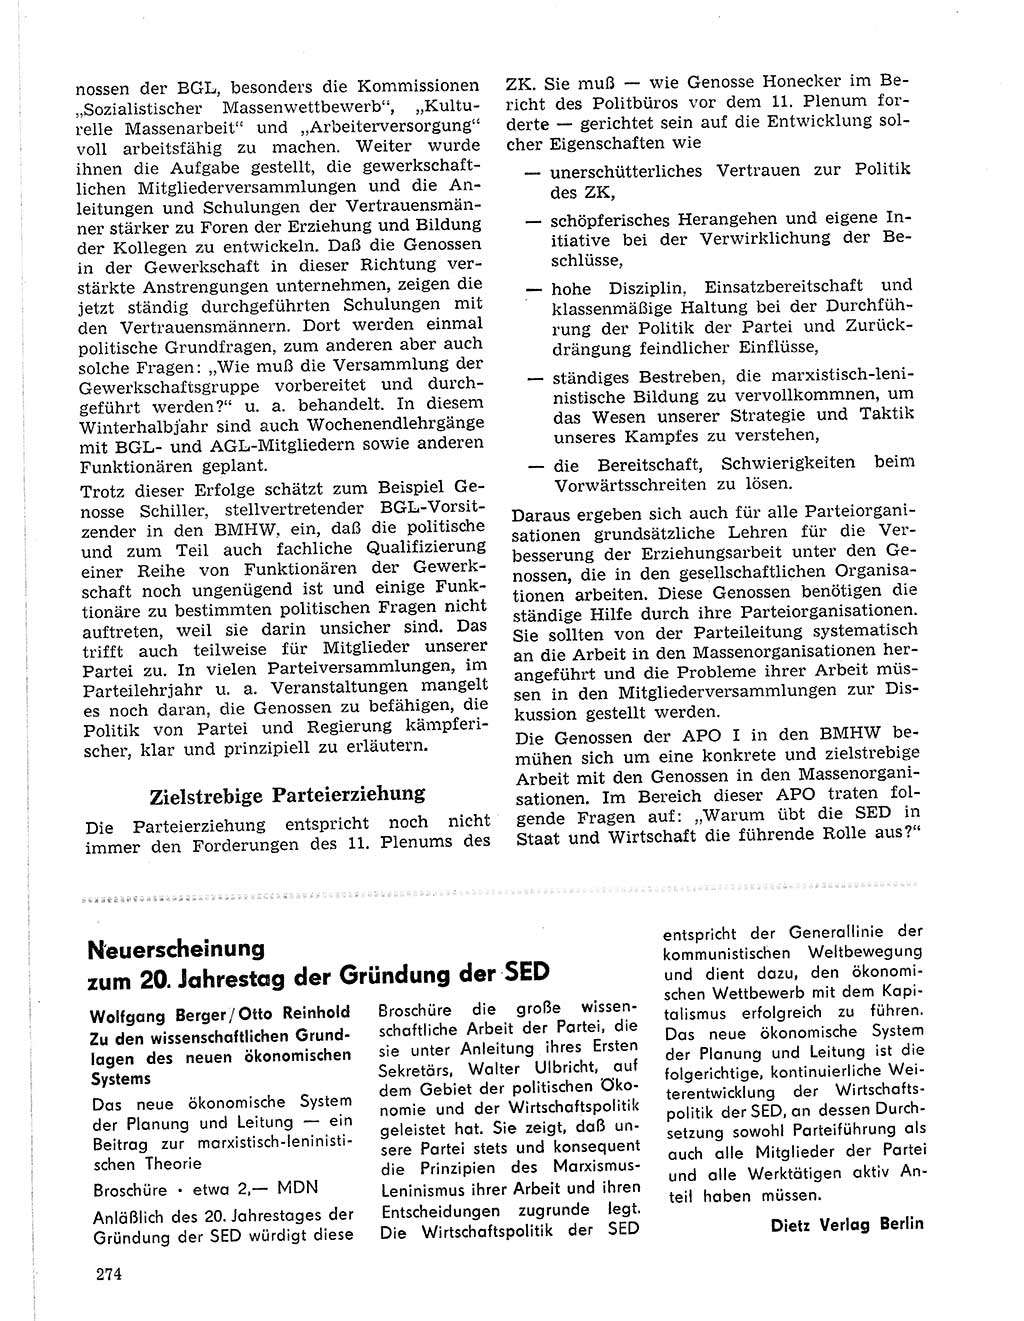 Neuer Weg (NW), Organ des Zentralkomitees (ZK) der SED (Sozialistische Einheitspartei Deutschlands) für Fragen des Parteilebens, 21. Jahrgang [Deutsche Demokratische Republik (DDR)] 1966, Seite 274 (NW ZK SED DDR 1966, S. 274)